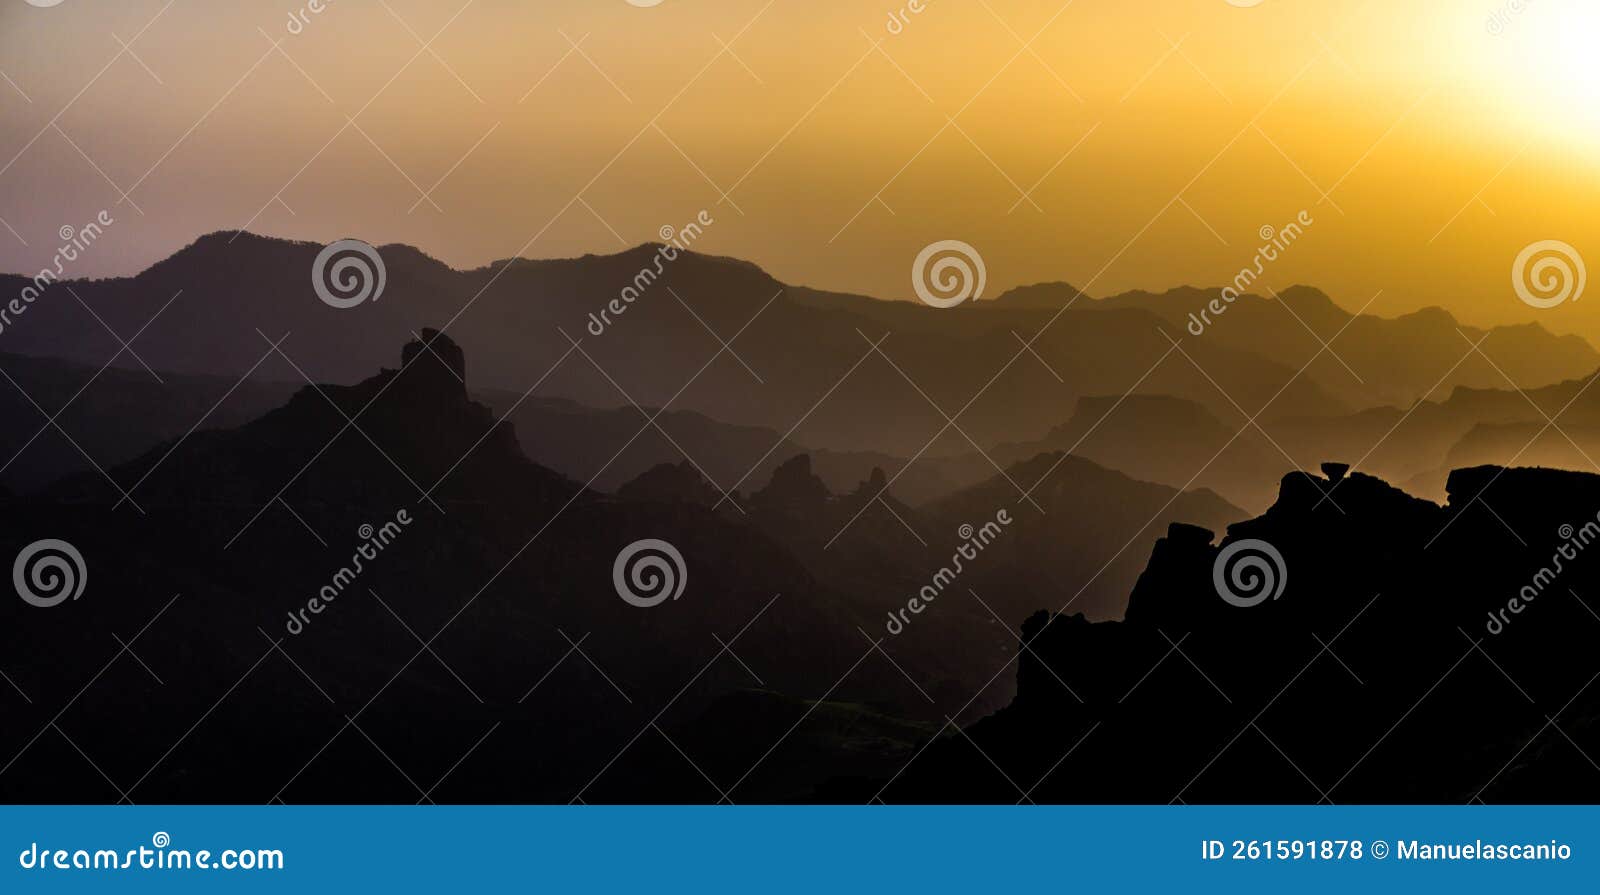 caldera de tejeda, degollada de las palomas, misty mountain layer shades landscape panorama from pico de la gorra, gran canaria is